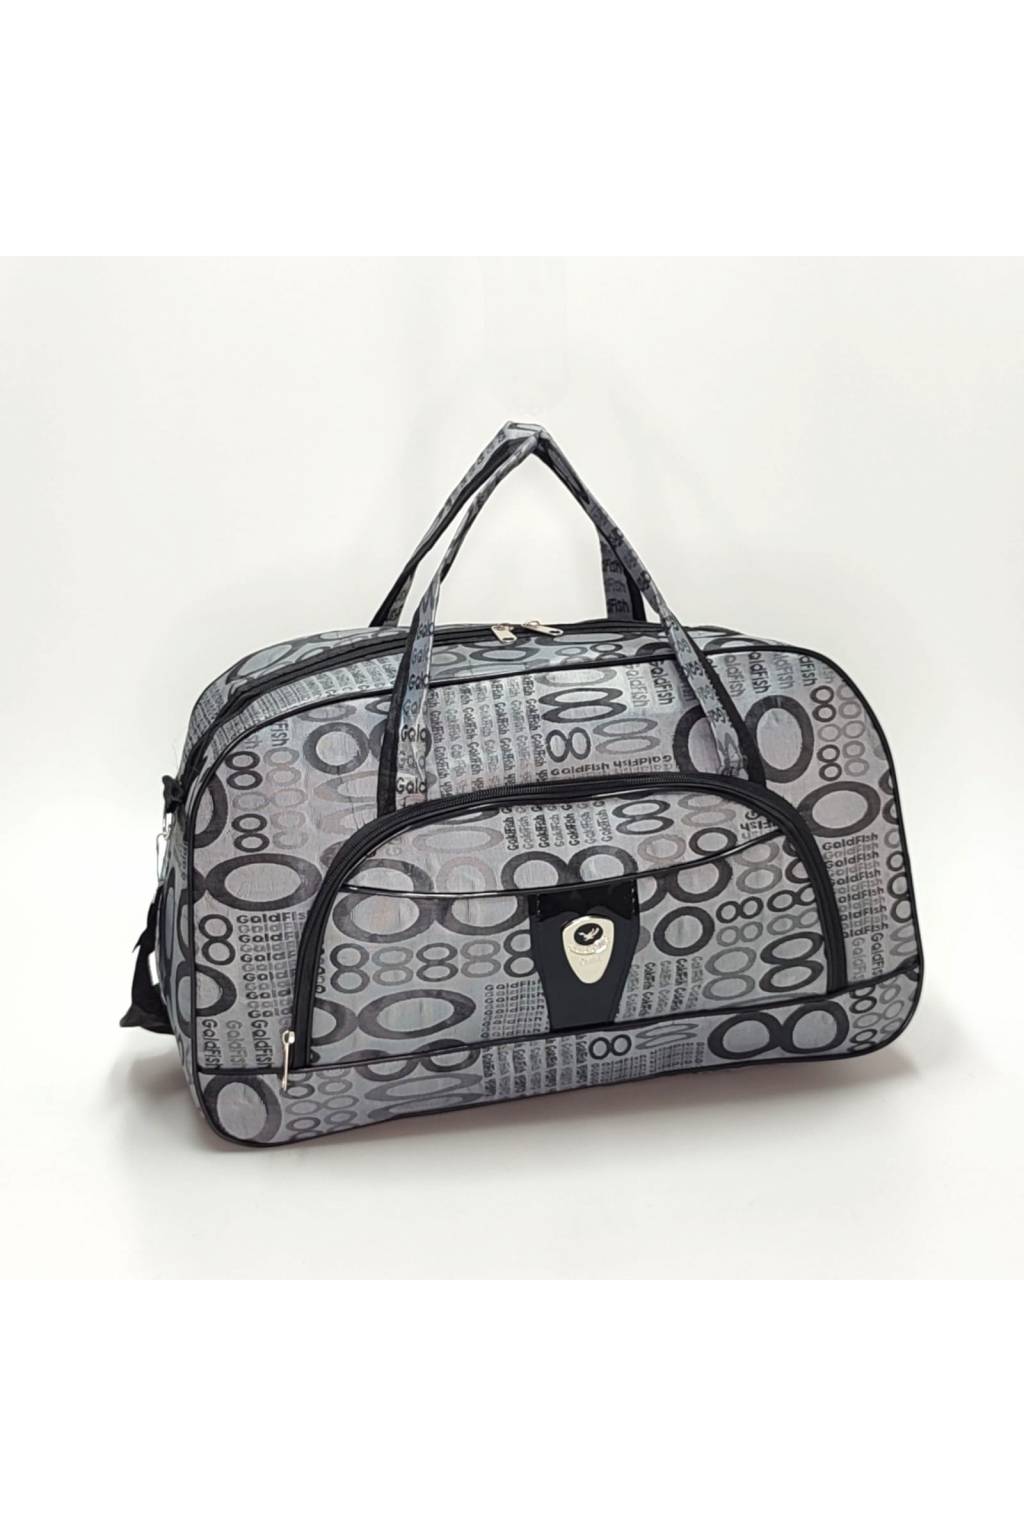 Cestovná taška B7135 2 sivá www.kabelky vypredaj (4)